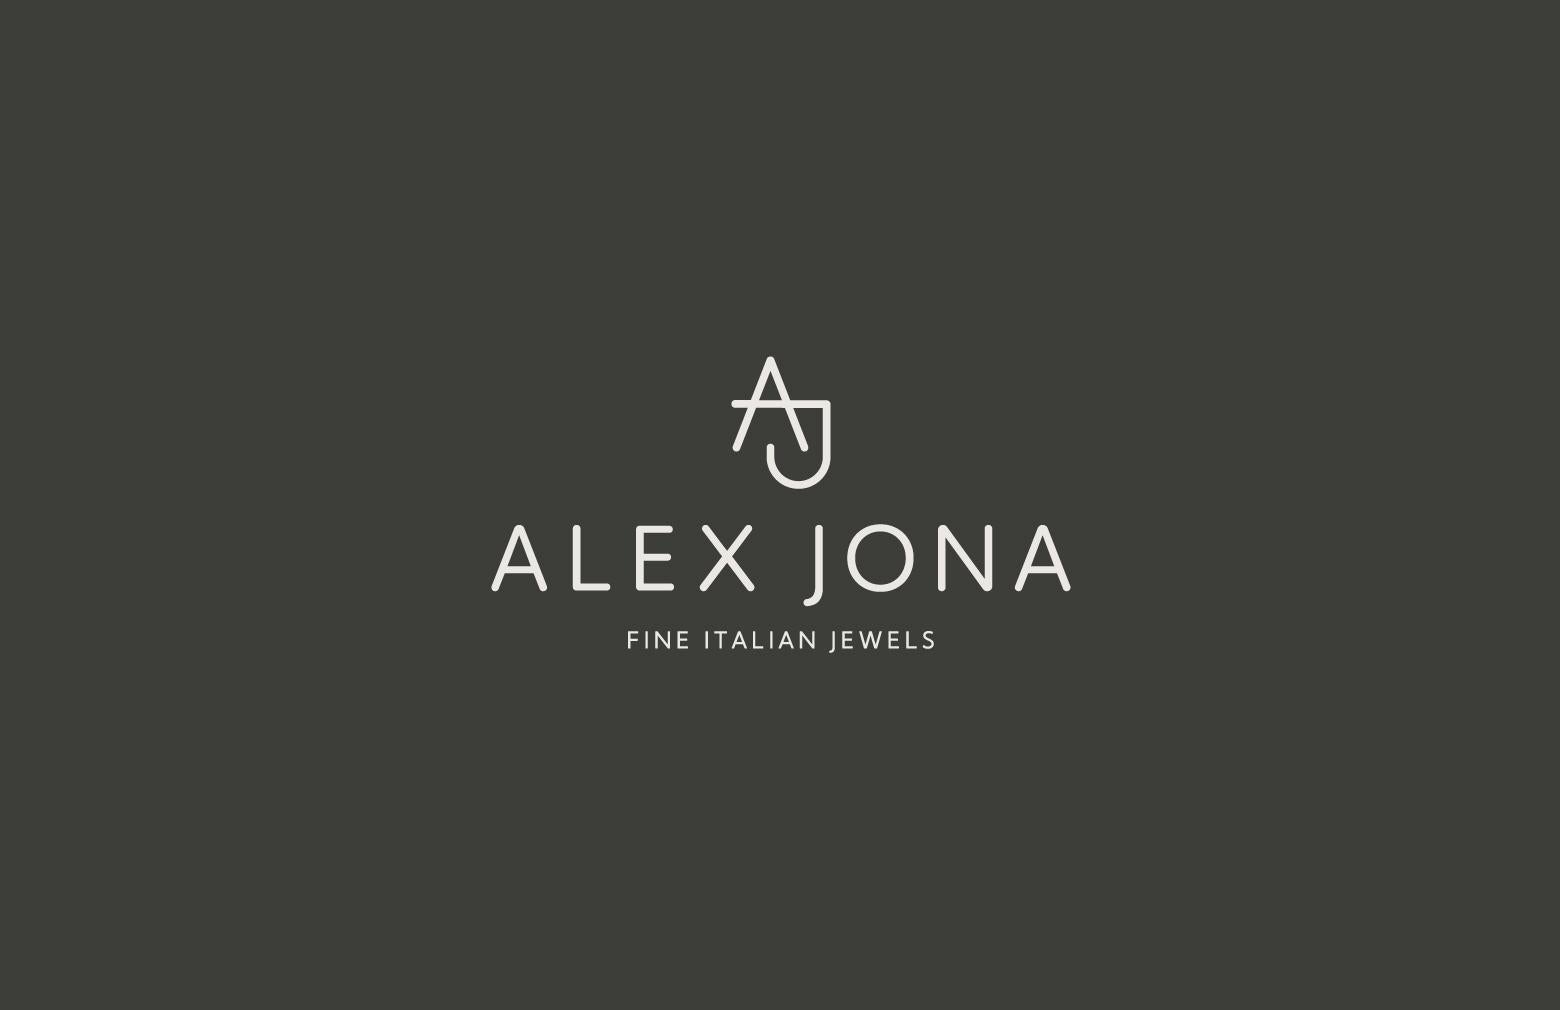 Alex Jona White Diamond 18 Karat Rose Gold Rose Stud Earrings For Sale 6